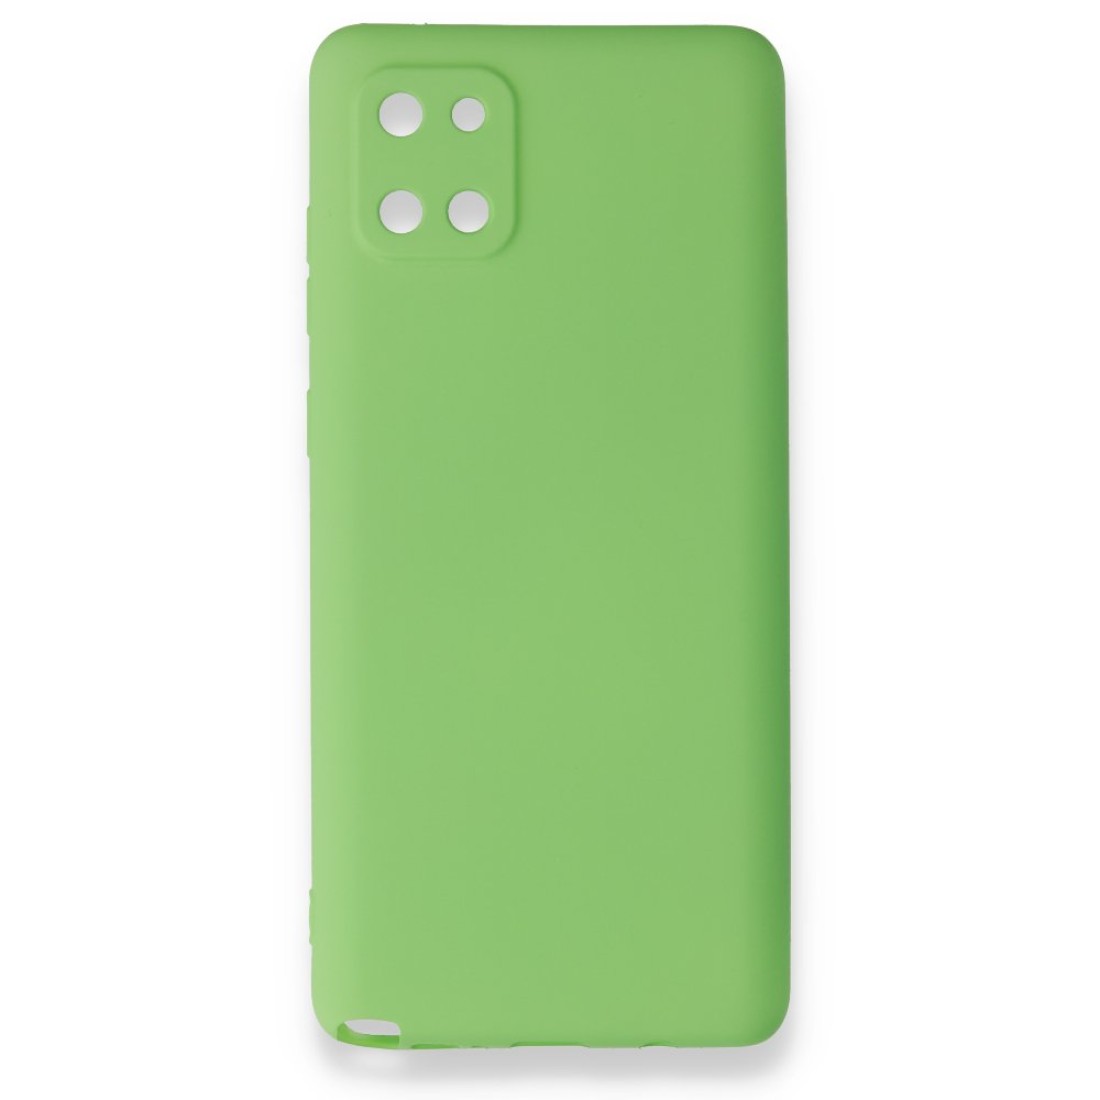 Samsung Galaxy A81 / Note 10 Lite Kılıf Premium Rubber Silikon - Yeşil